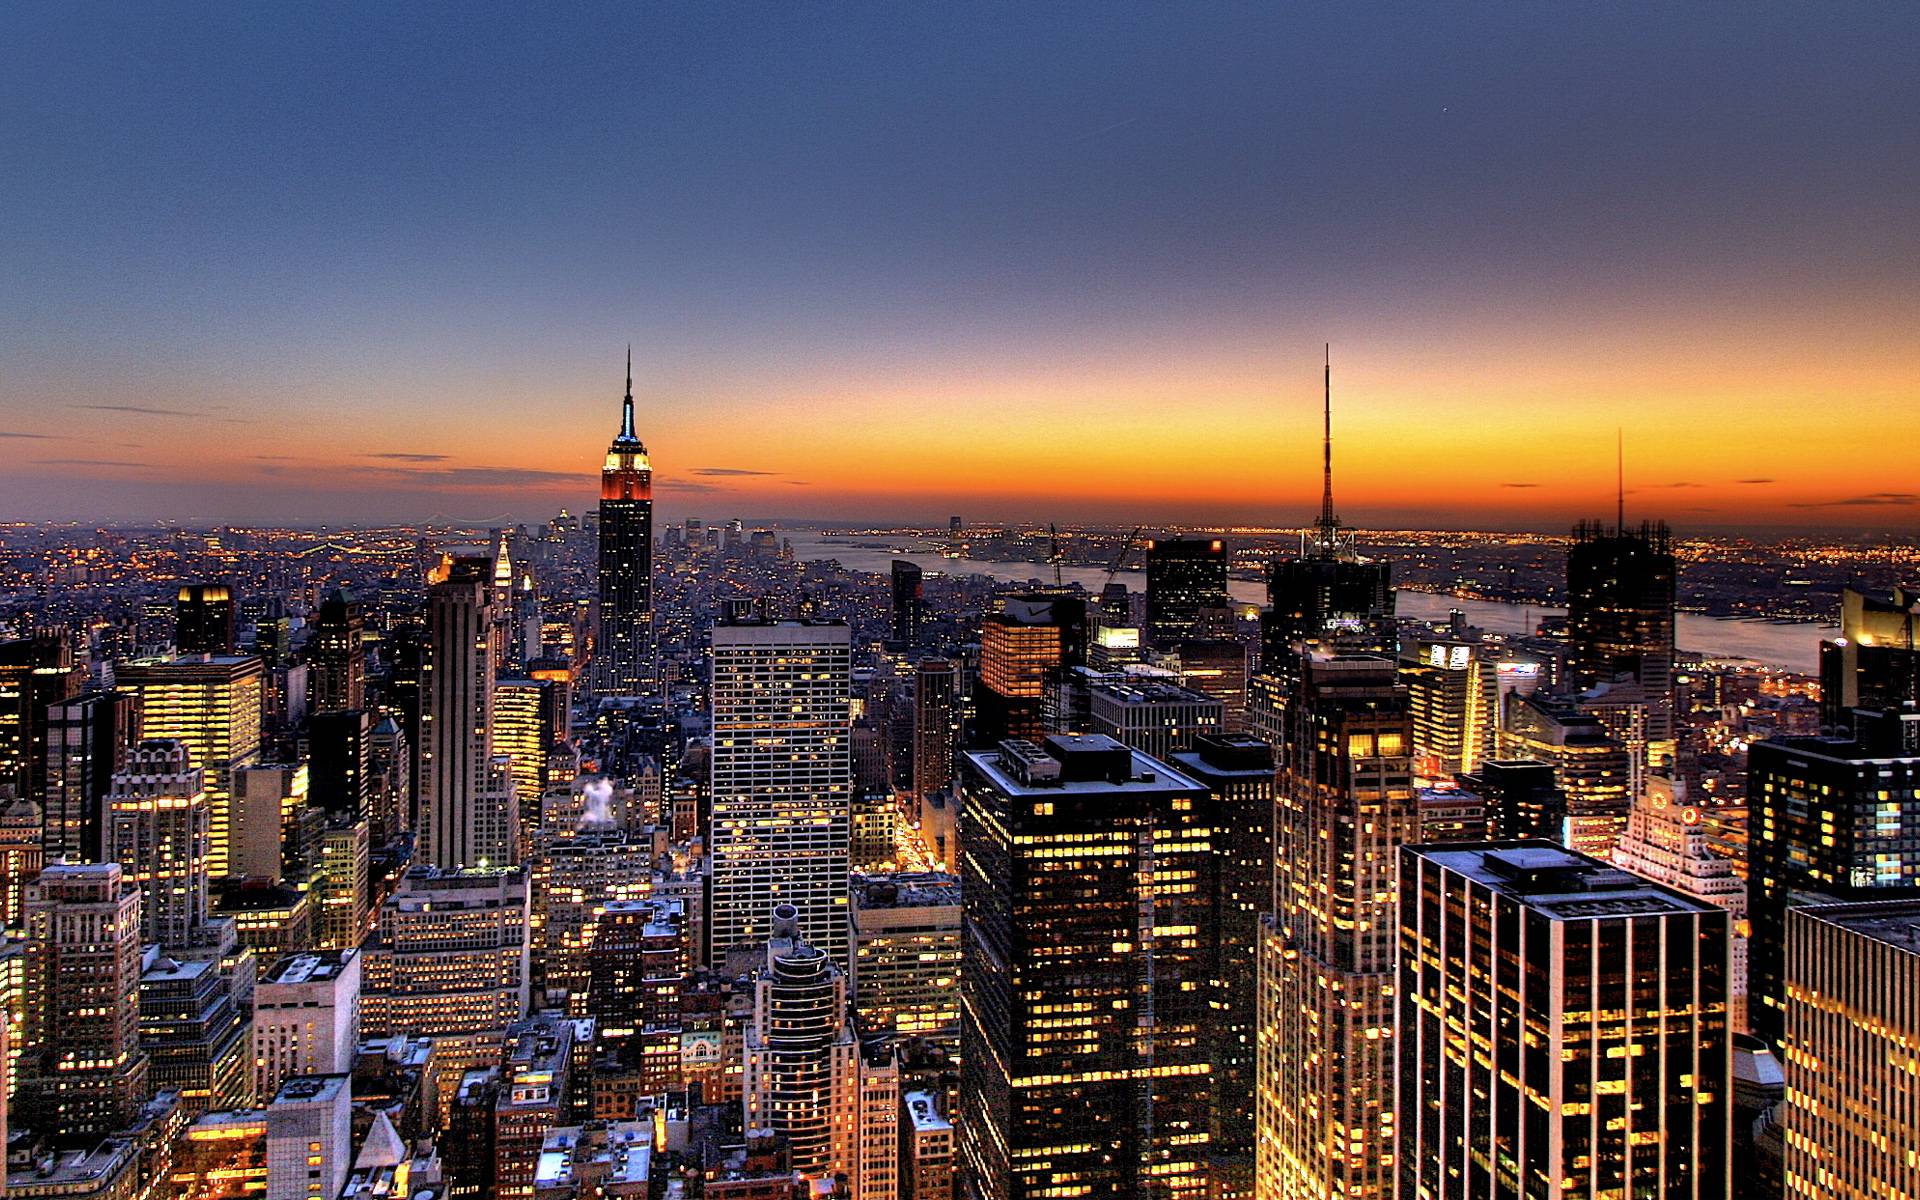 New York's breathtaking Desktop backgrounds New York skyline For city lovers